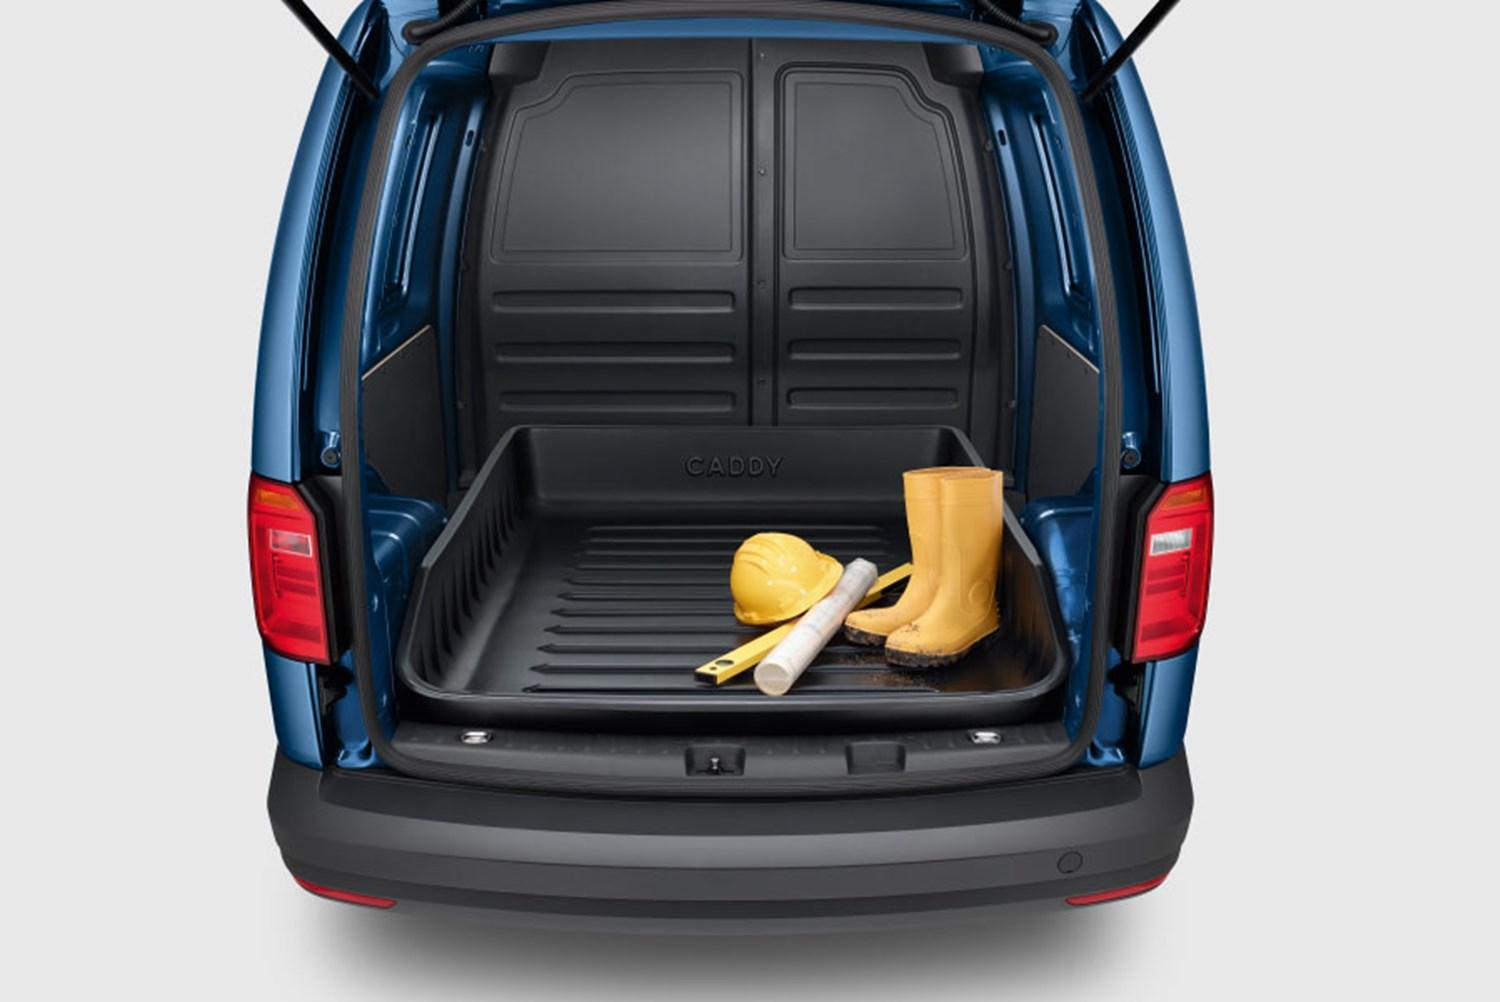 Volkswagen Van Rear Side View With Boot Open